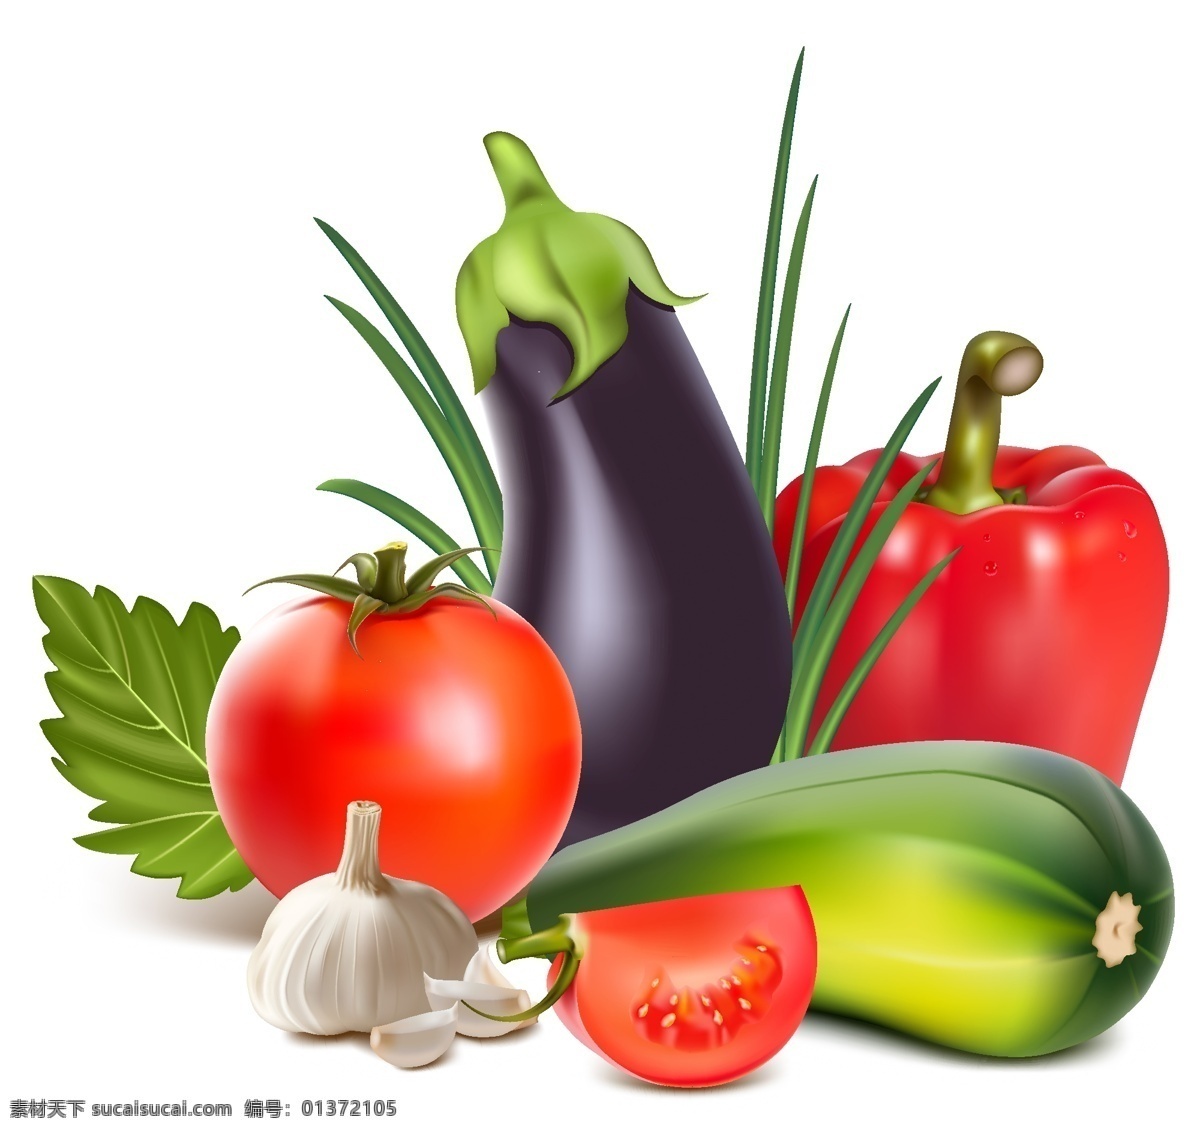 大蒜 卡通设计 茄子 青椒 手绘 蔬菜 西红柿 矢量 模板下载 手绘蔬菜矢量 蔬菜水果 矢量图 日常生活